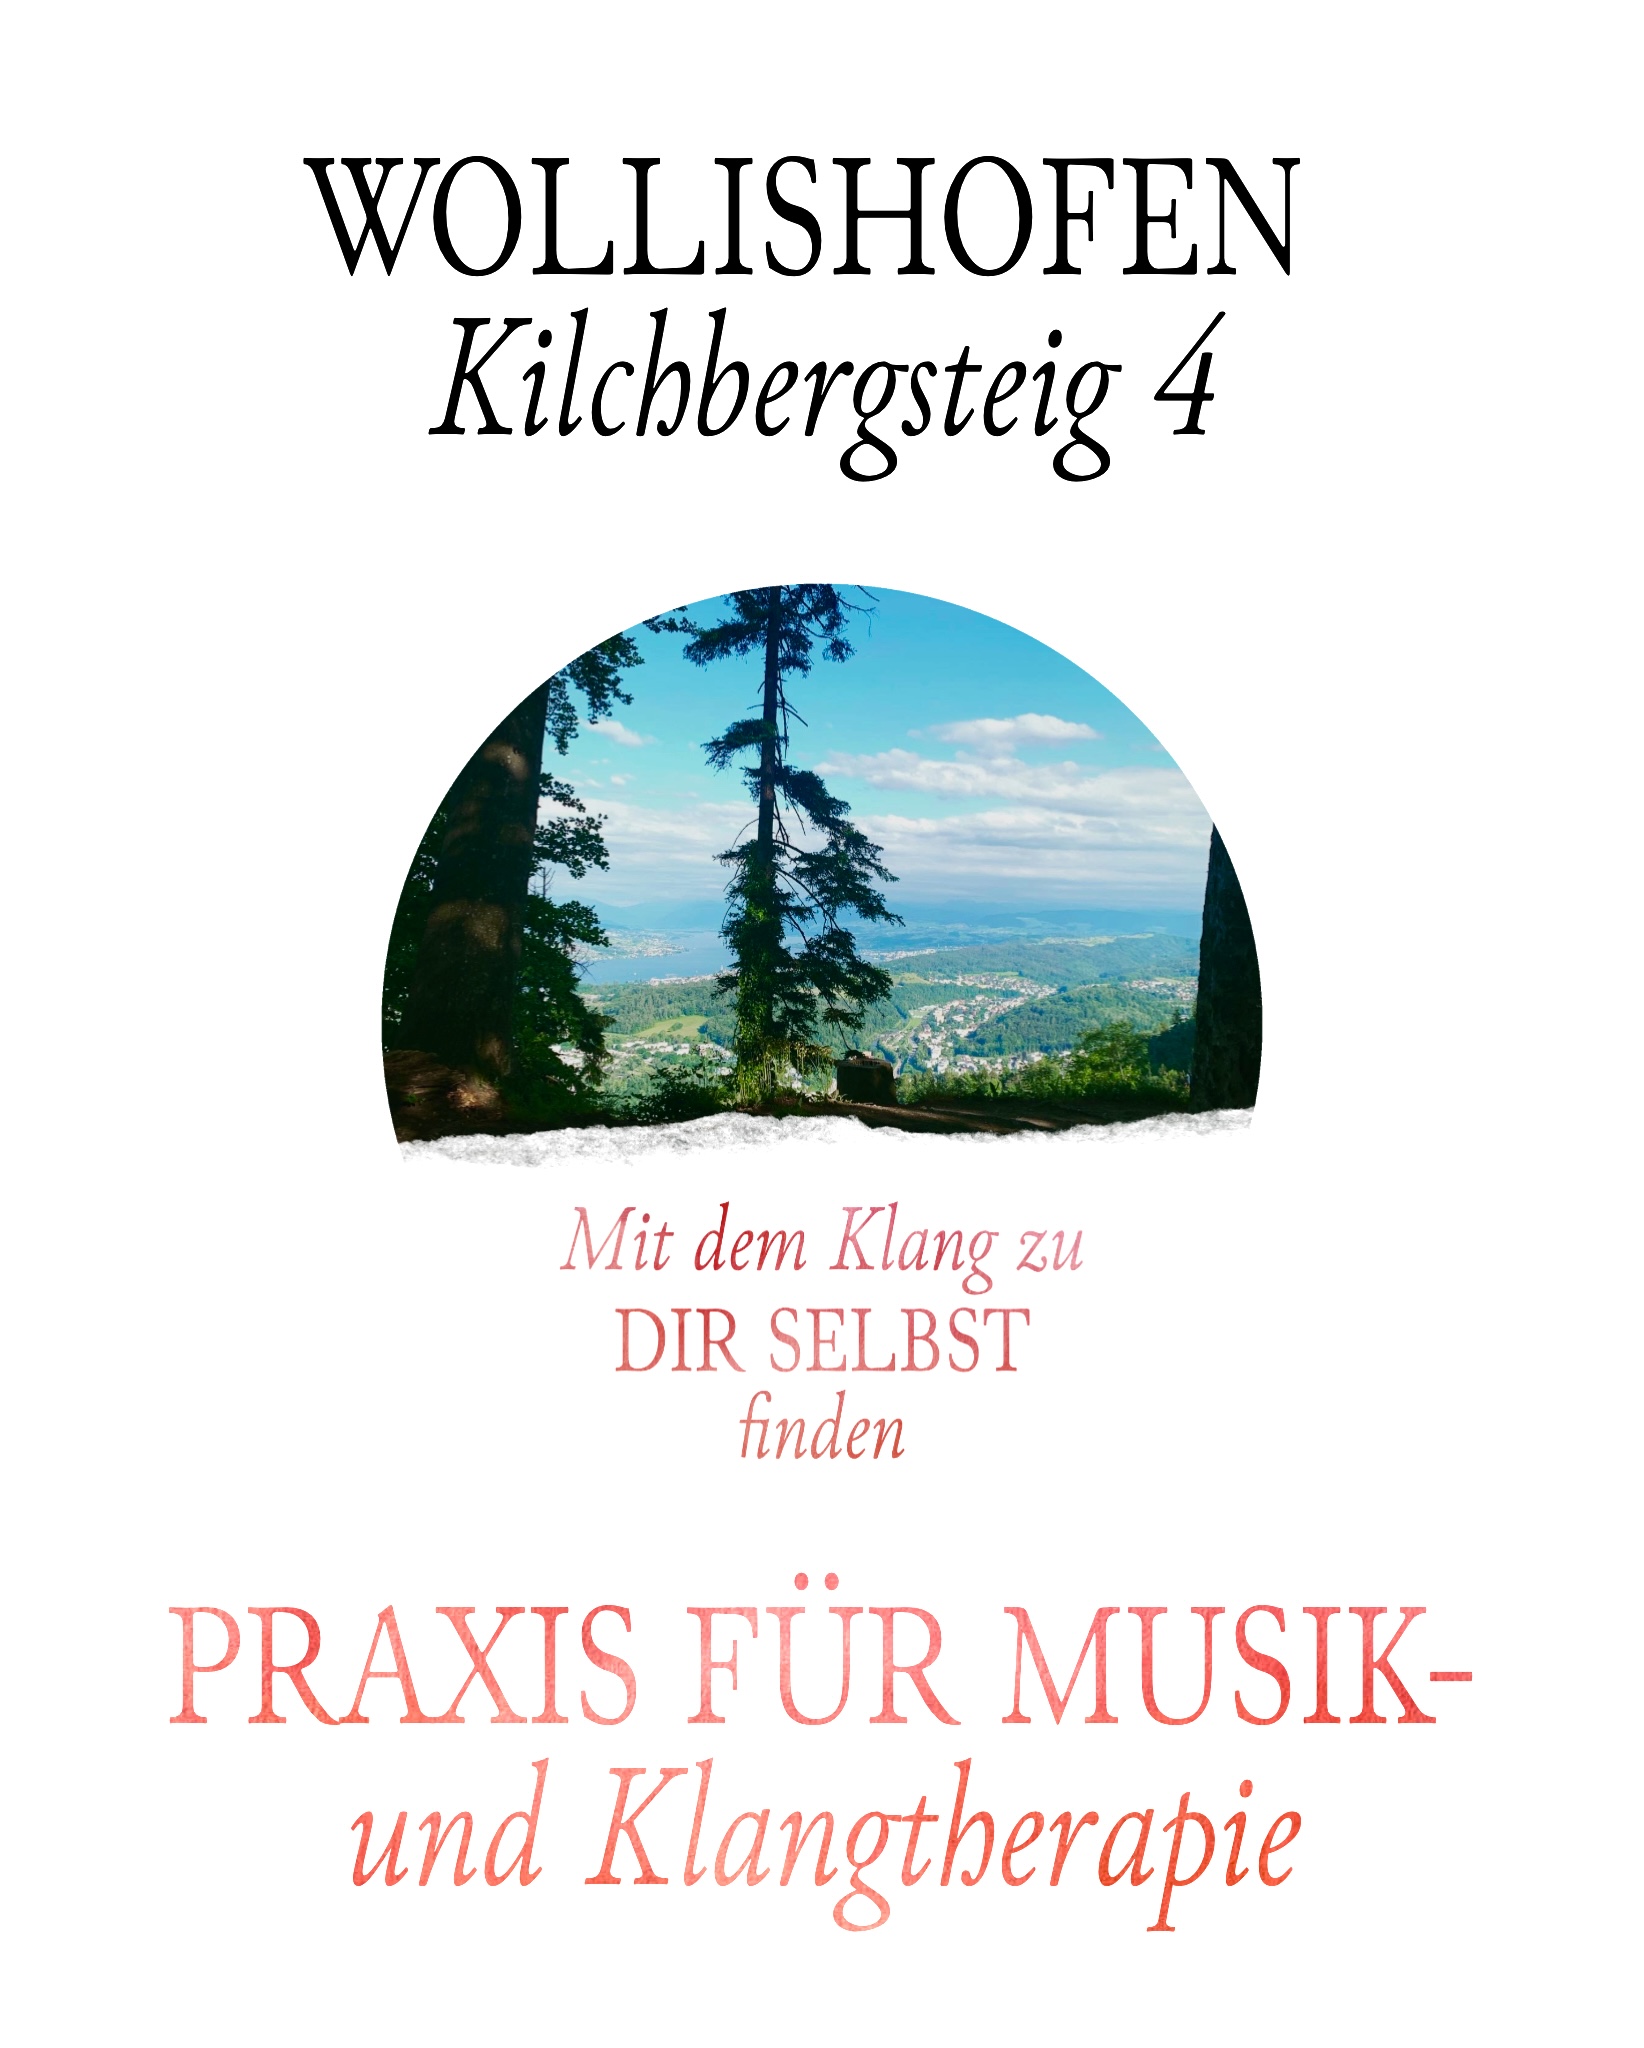 Musik- und Klangtherapie Zürich – KLANGMUSIK.CH